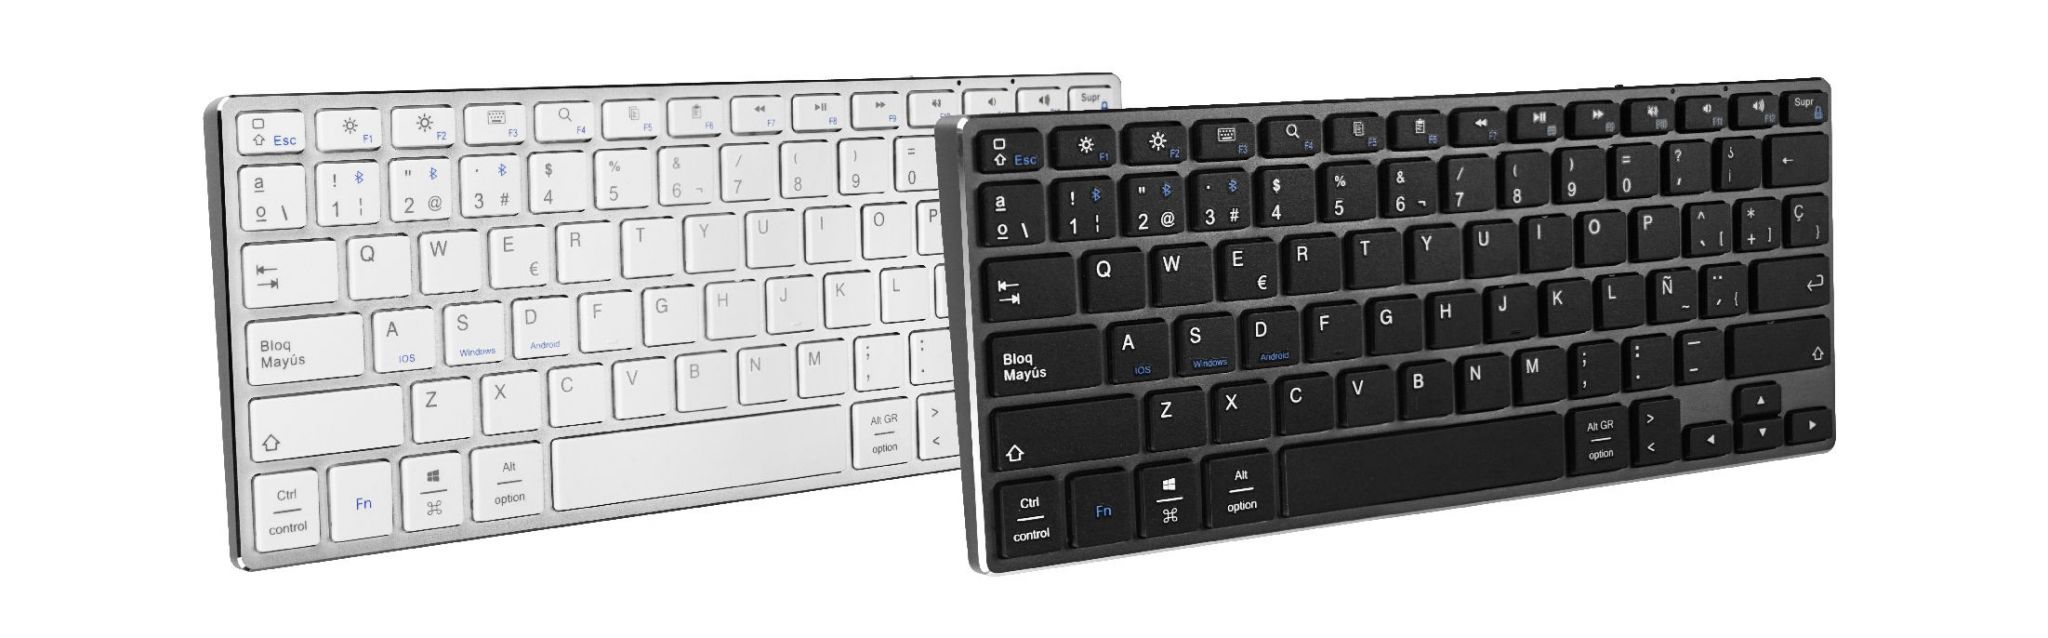 teclado advance compact